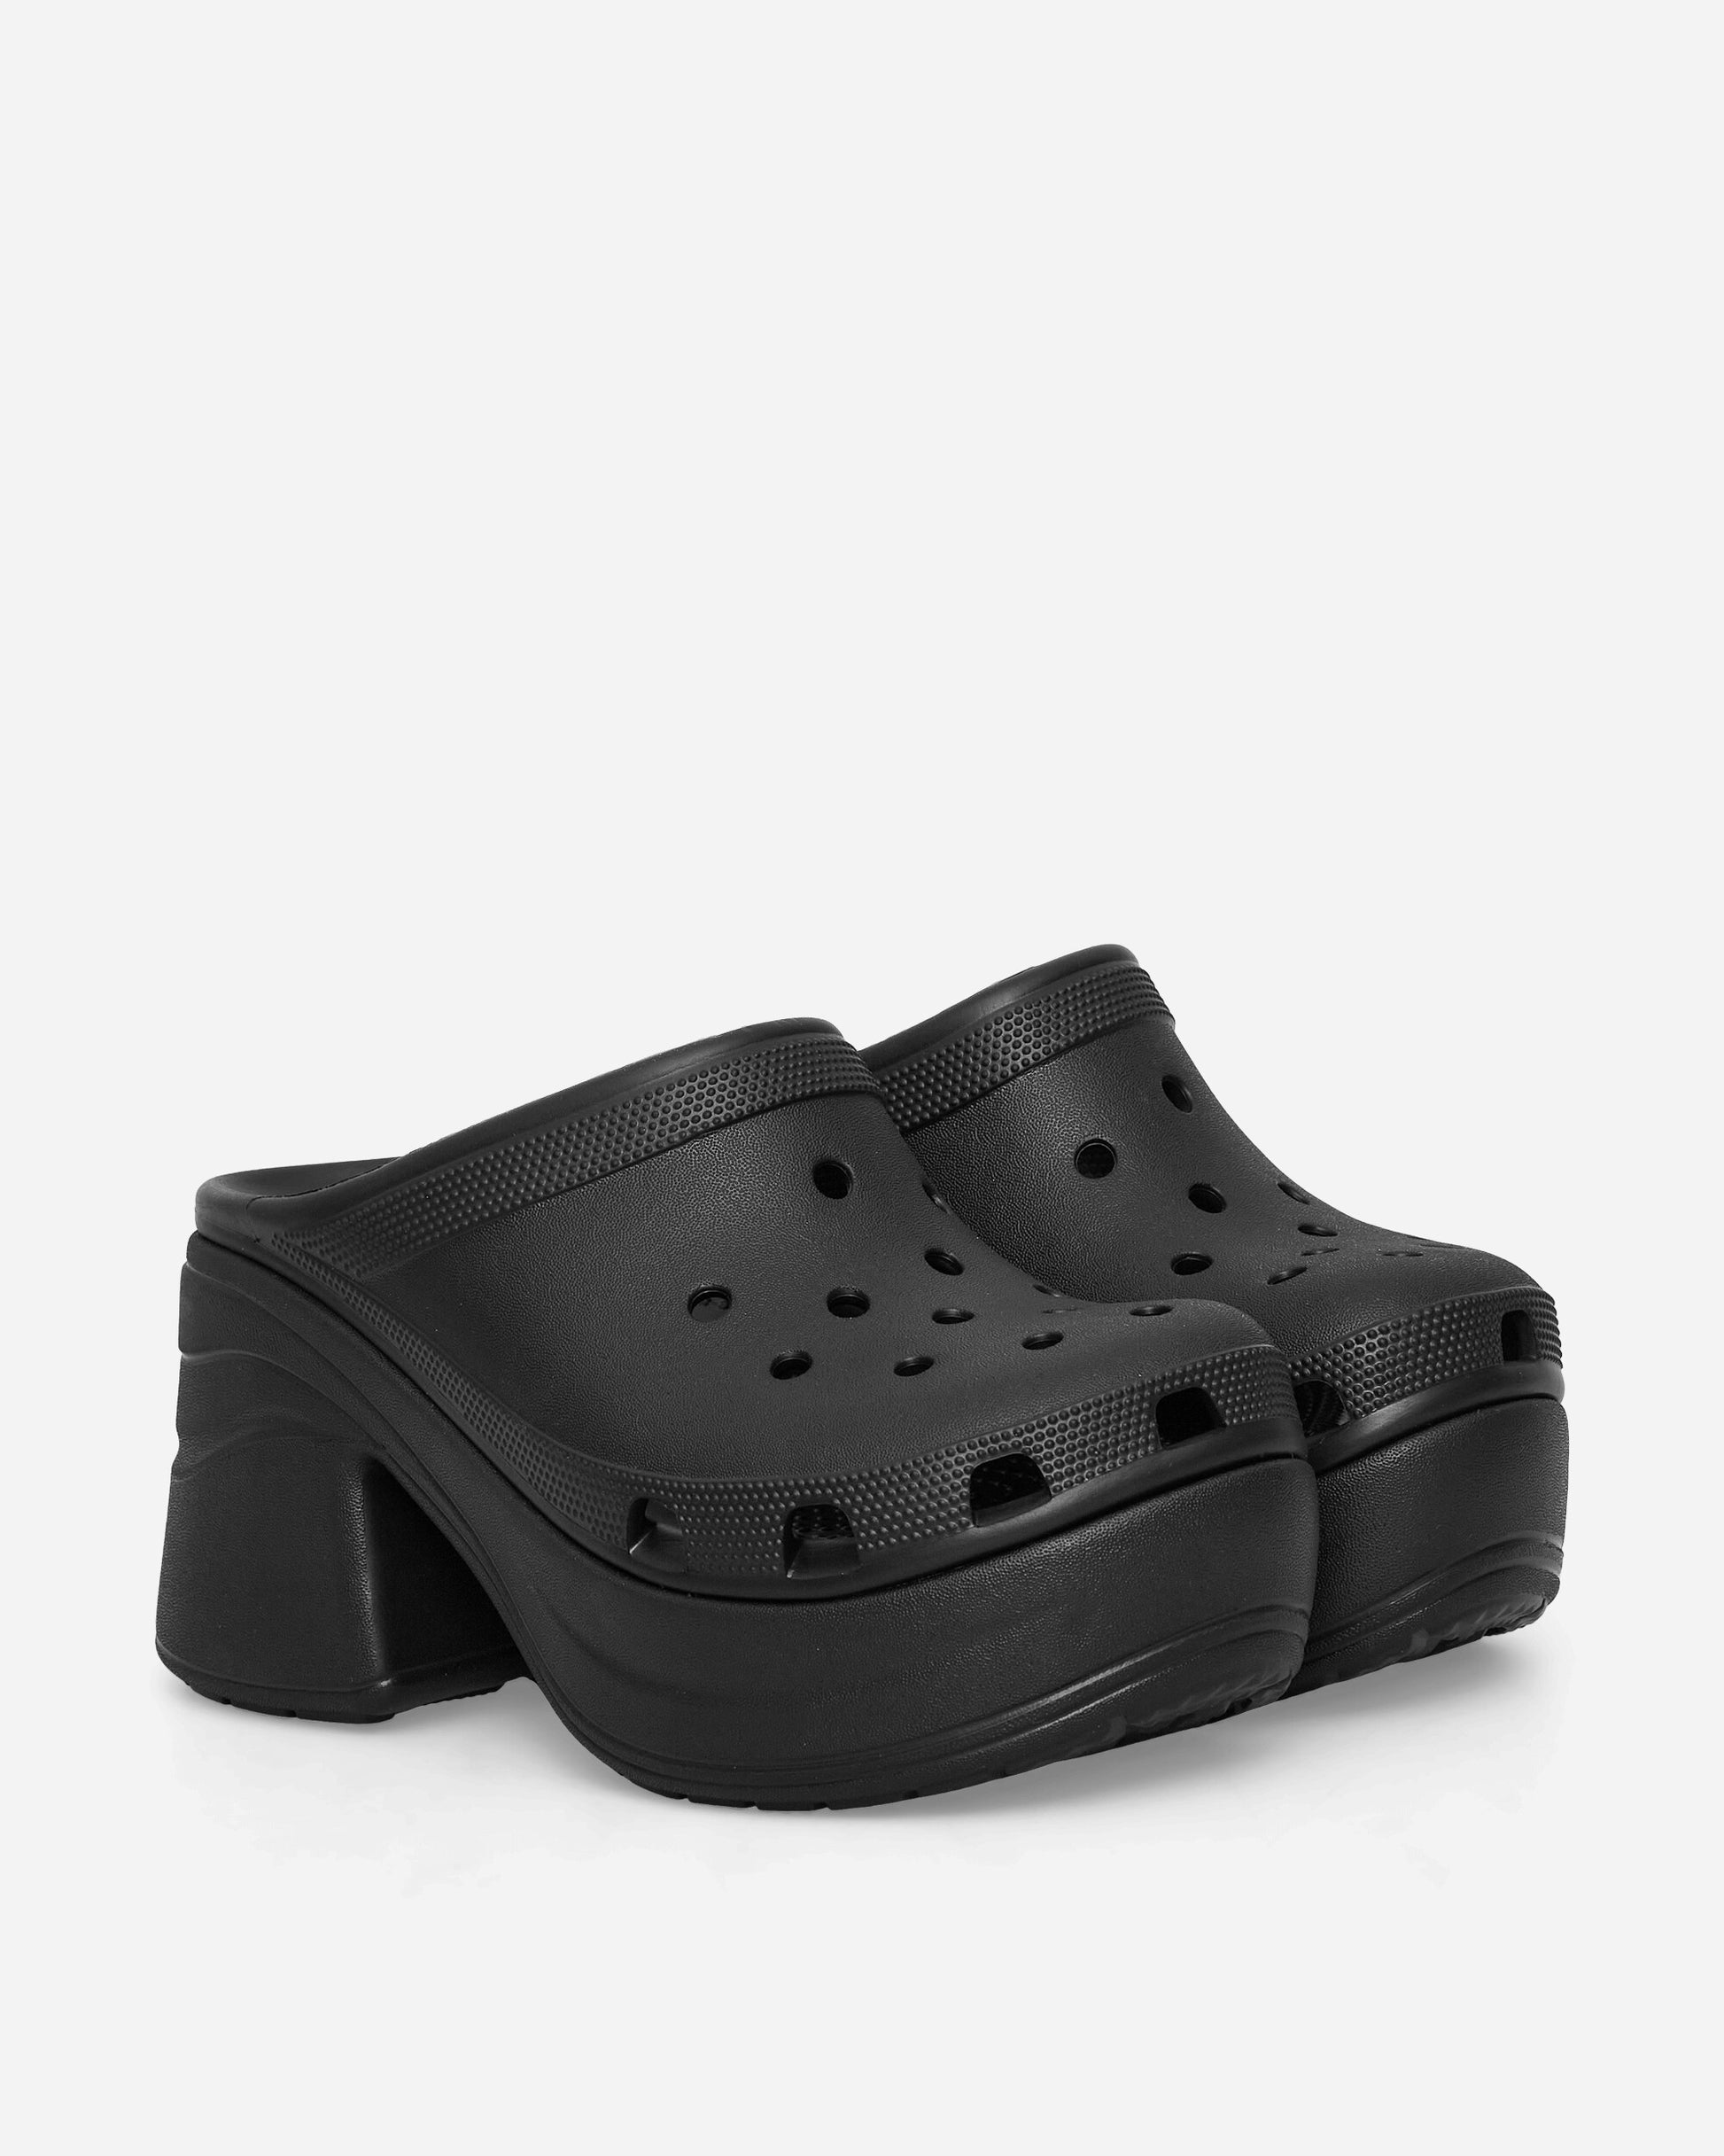 Crocs Wmns Siren Clog W Black Sandals and Slides Heels 208547 BLK